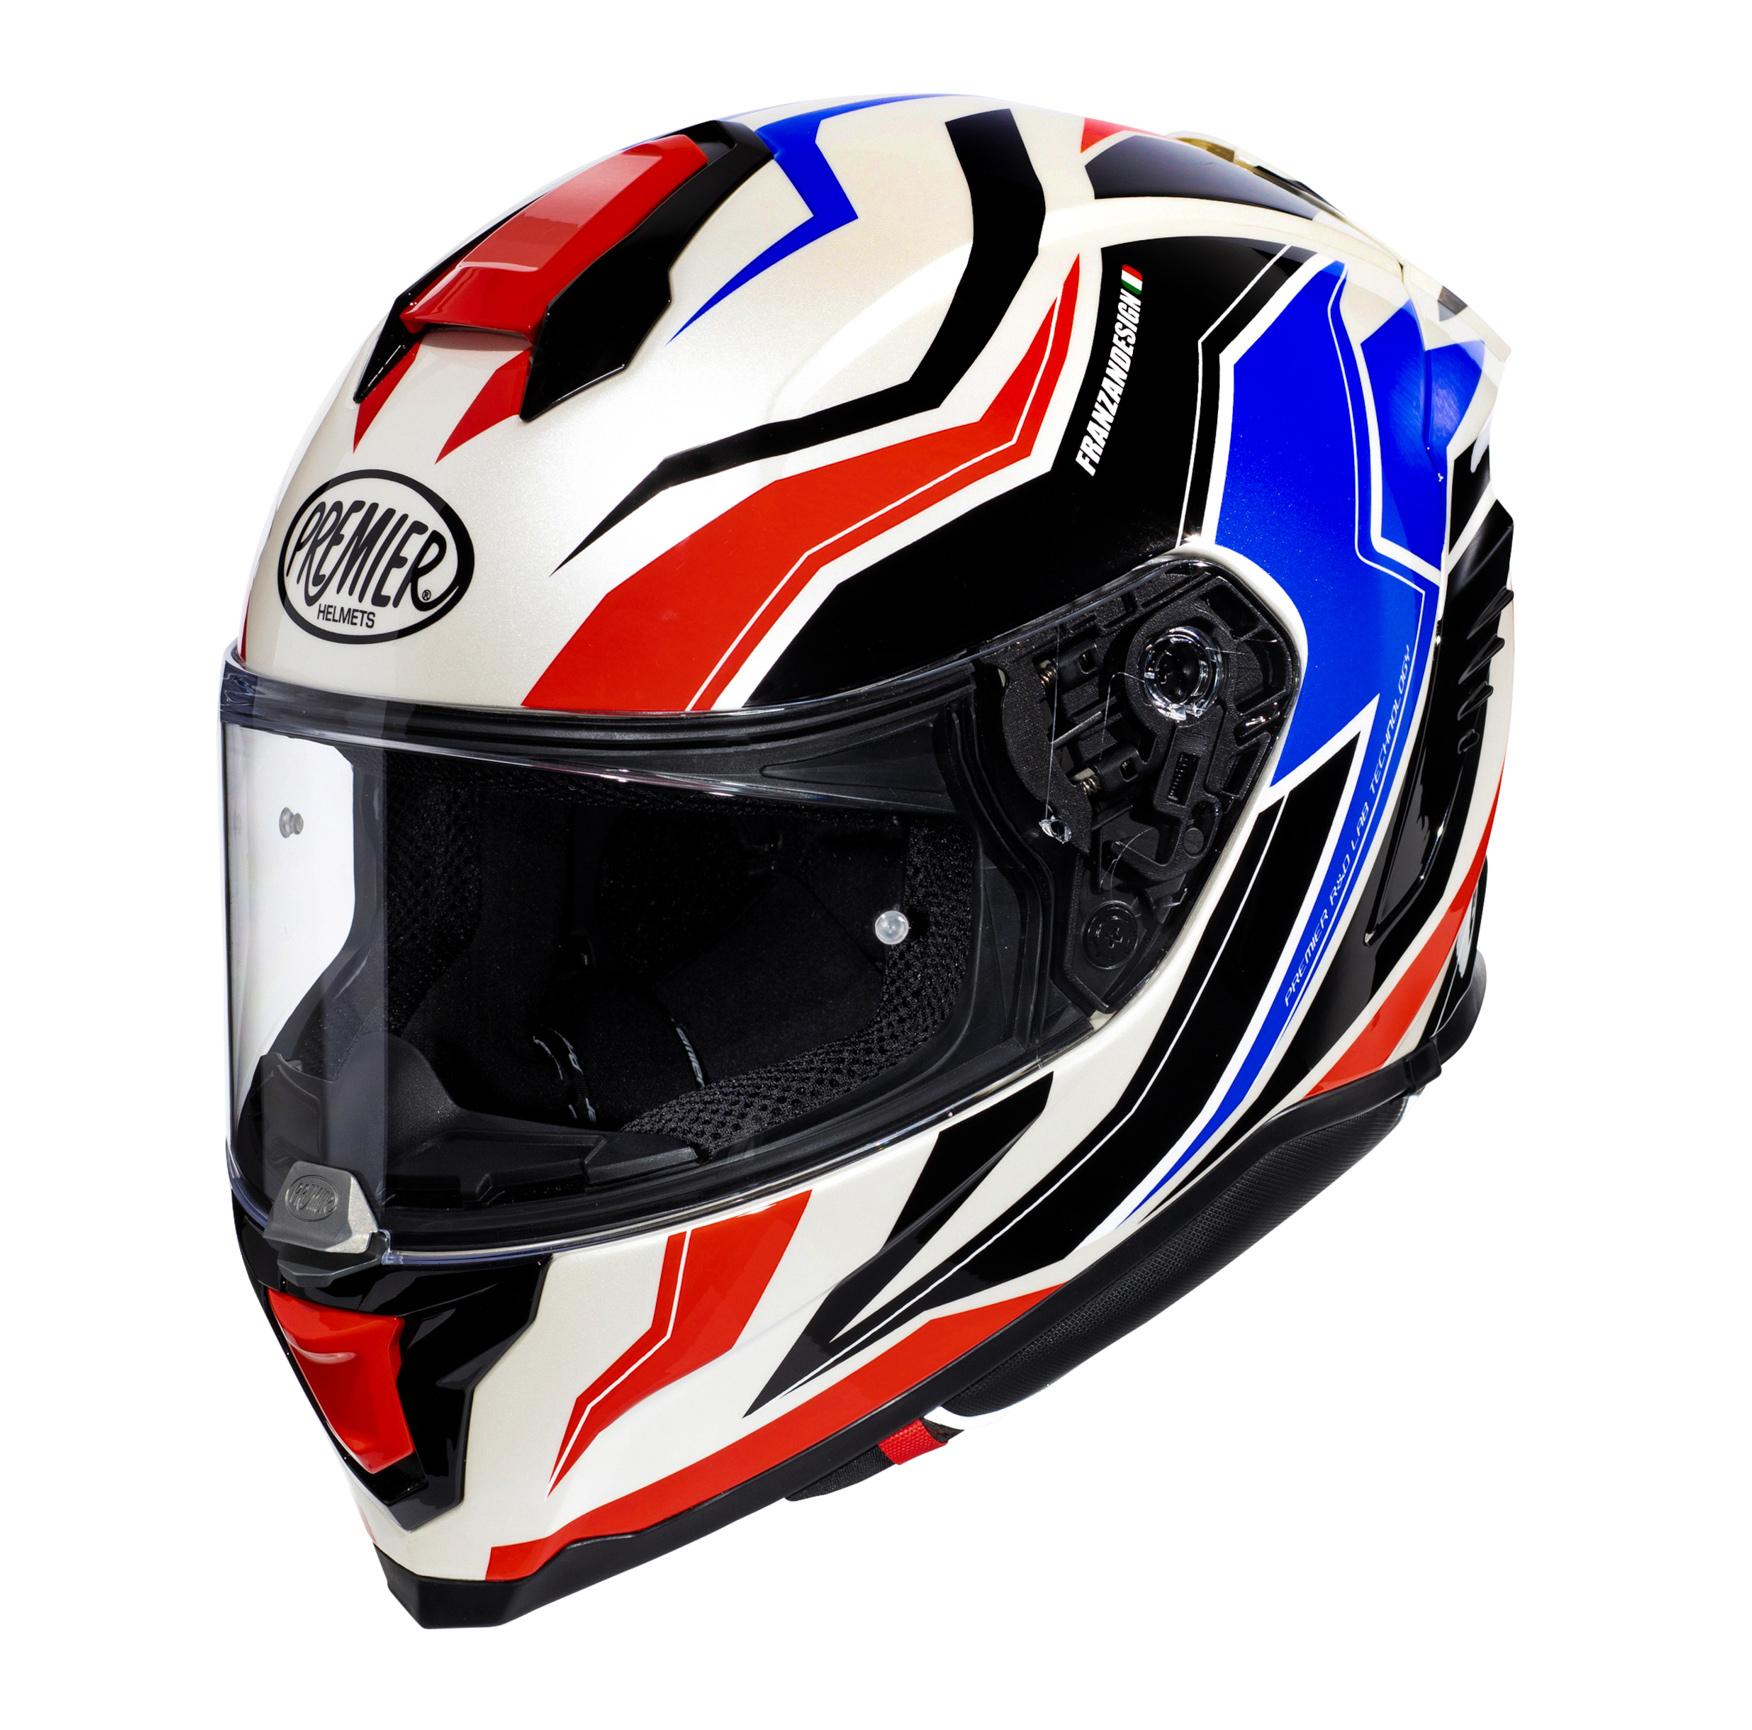 Premier Hyper Rw Full Face Motorcycle Helmet - Black/Red/White, Xl